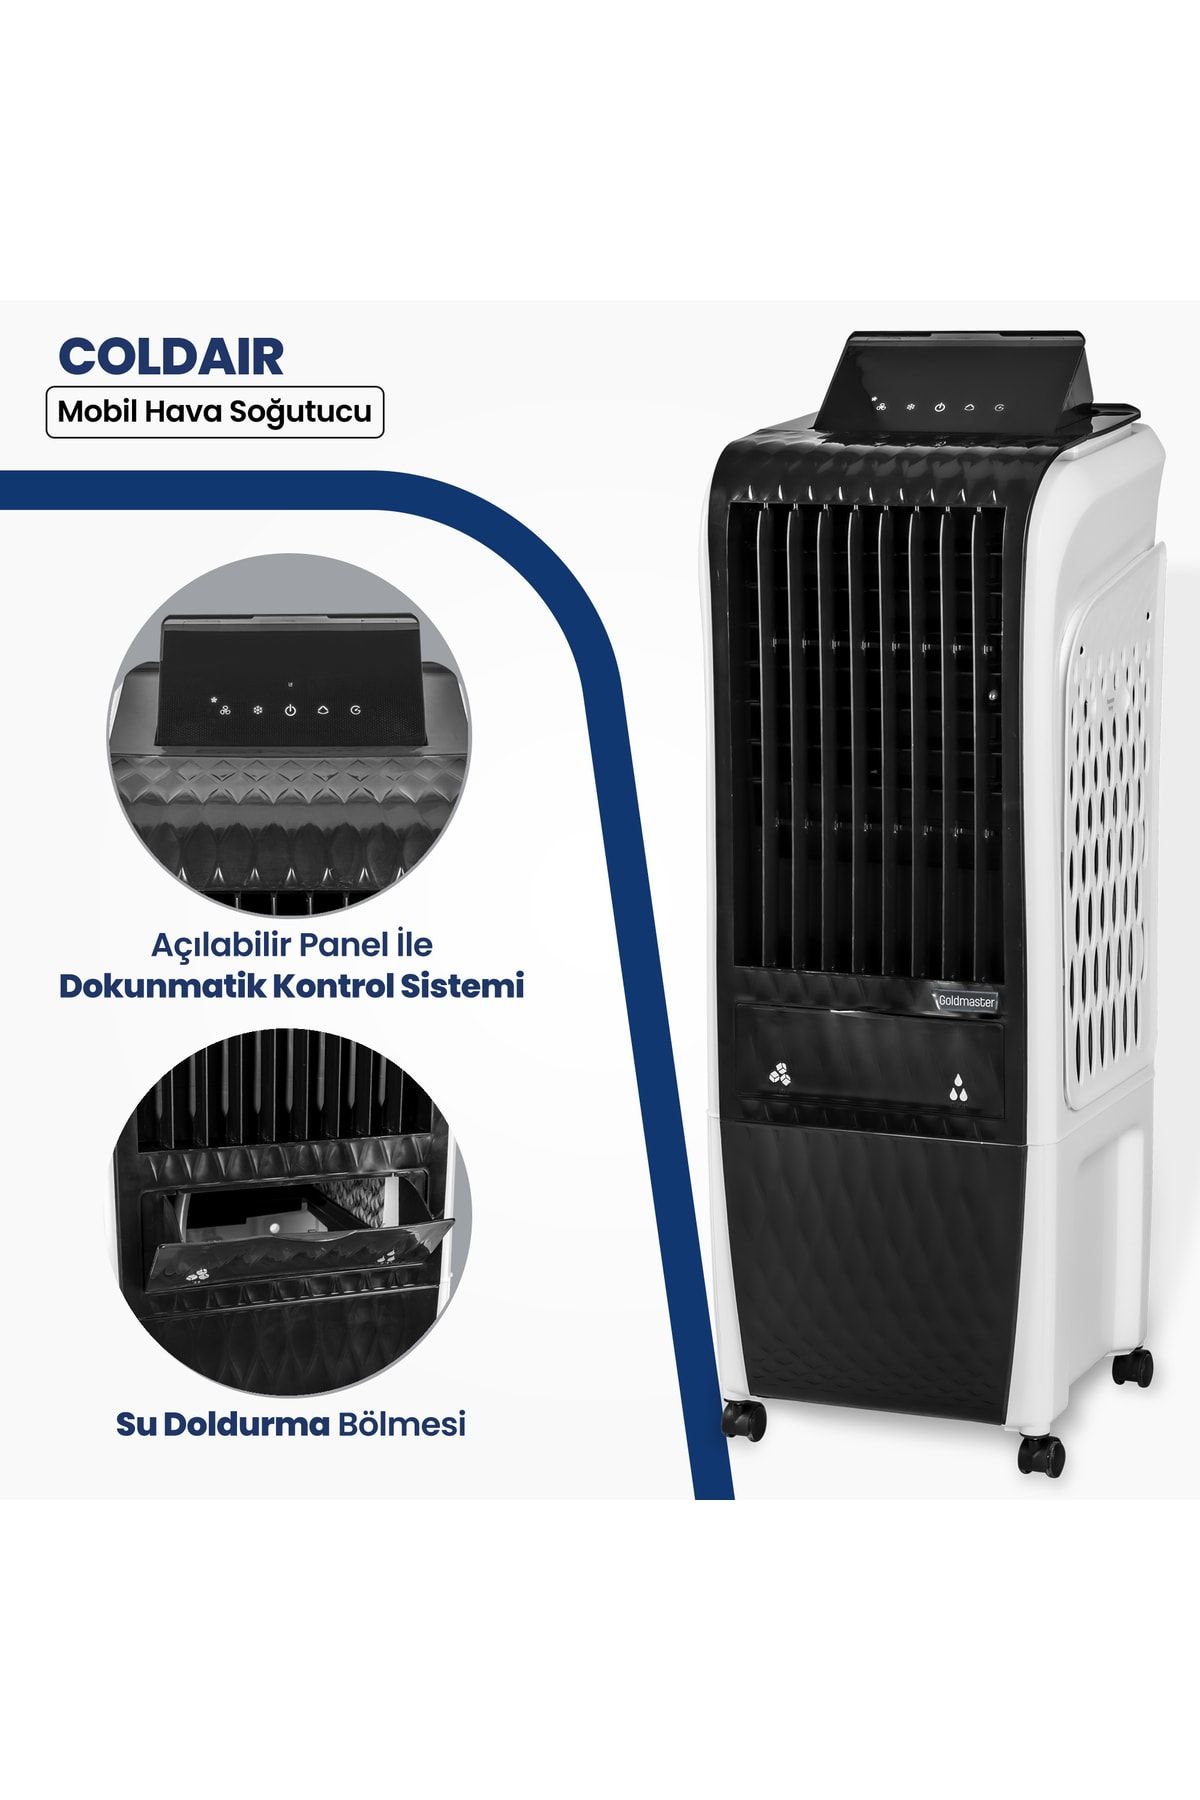 GoldMaster Coldair 20 L Kapasite 110 W Taşınabilir Hava Temizleyici Ve Mobil Hava Soğutucu